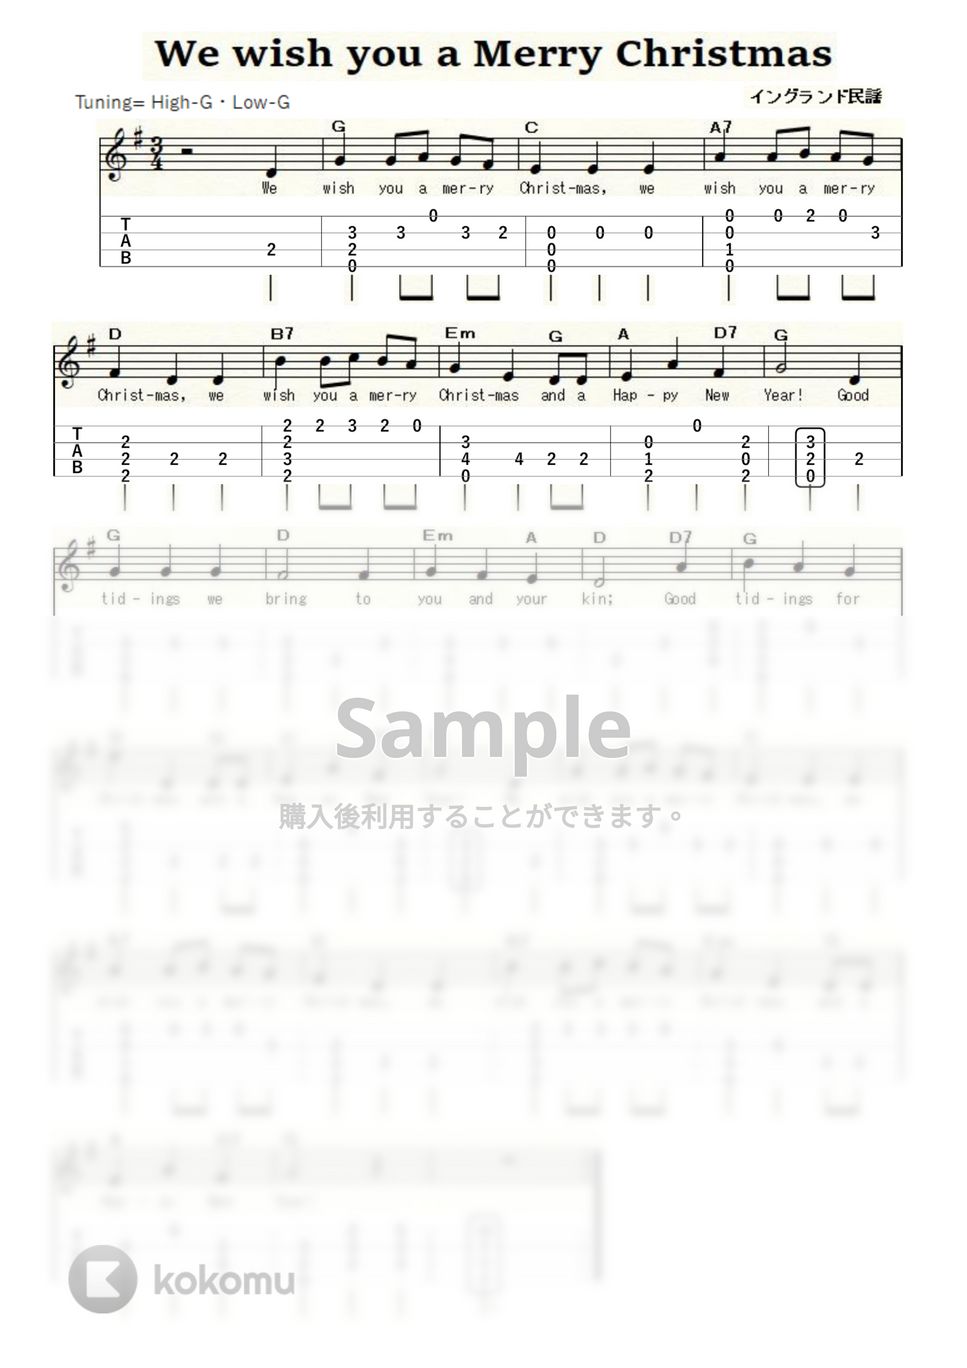 クリスマスソング - We wish you a Merry Christmas (ｳｸﾚﾚｿﾛ / High-G,Low-G / 初級) by ukulelepapa